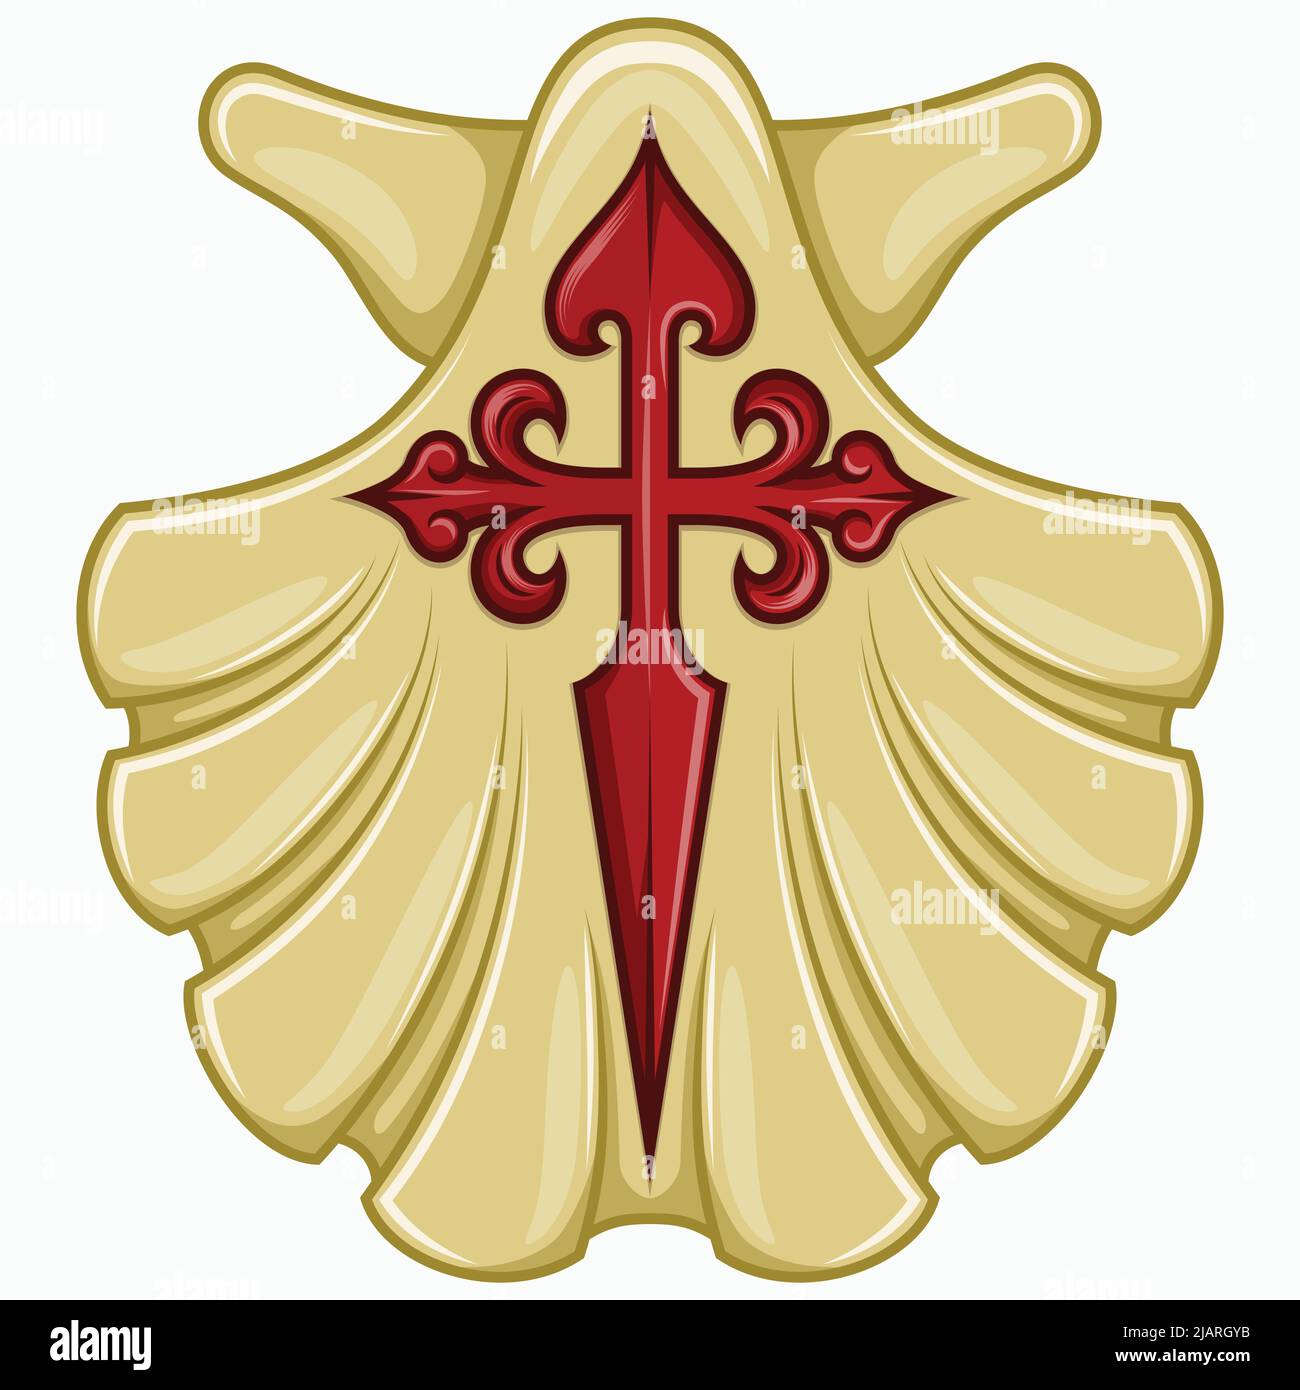 Marianisches Muschelvektordesign mit dem Kreuz des Apostels Santiago, Symbol des Jakobswegs, Kreuz des Ordens von Santiago Stock Vektor